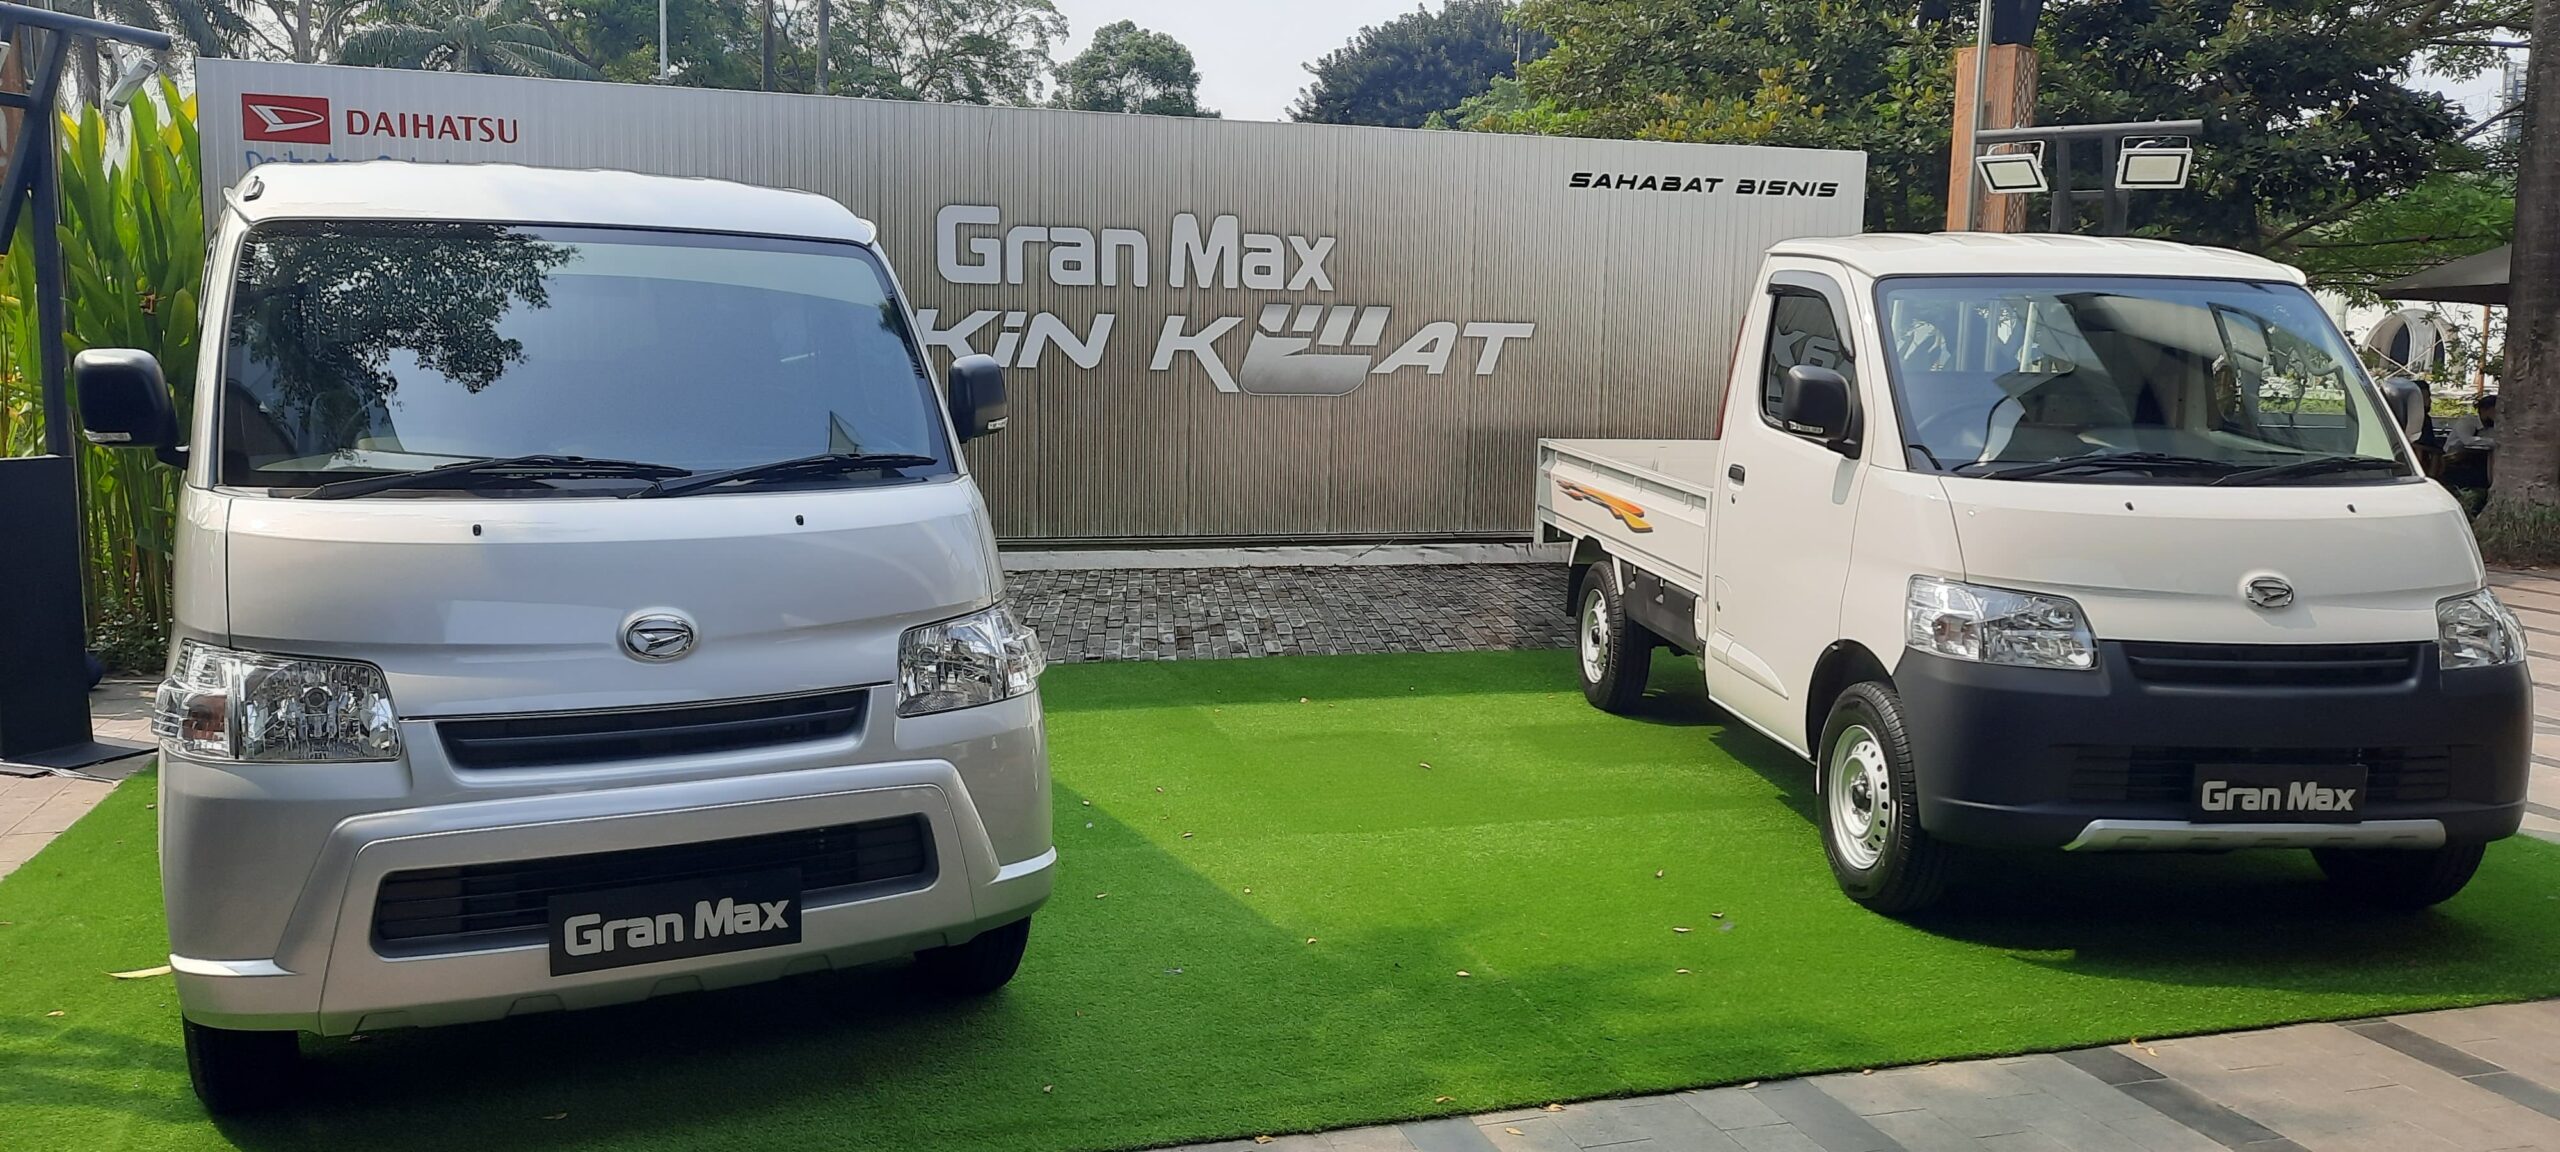 Daihatsu Luncurkan GranMax Bermesin Baru dengan Gaya Lama